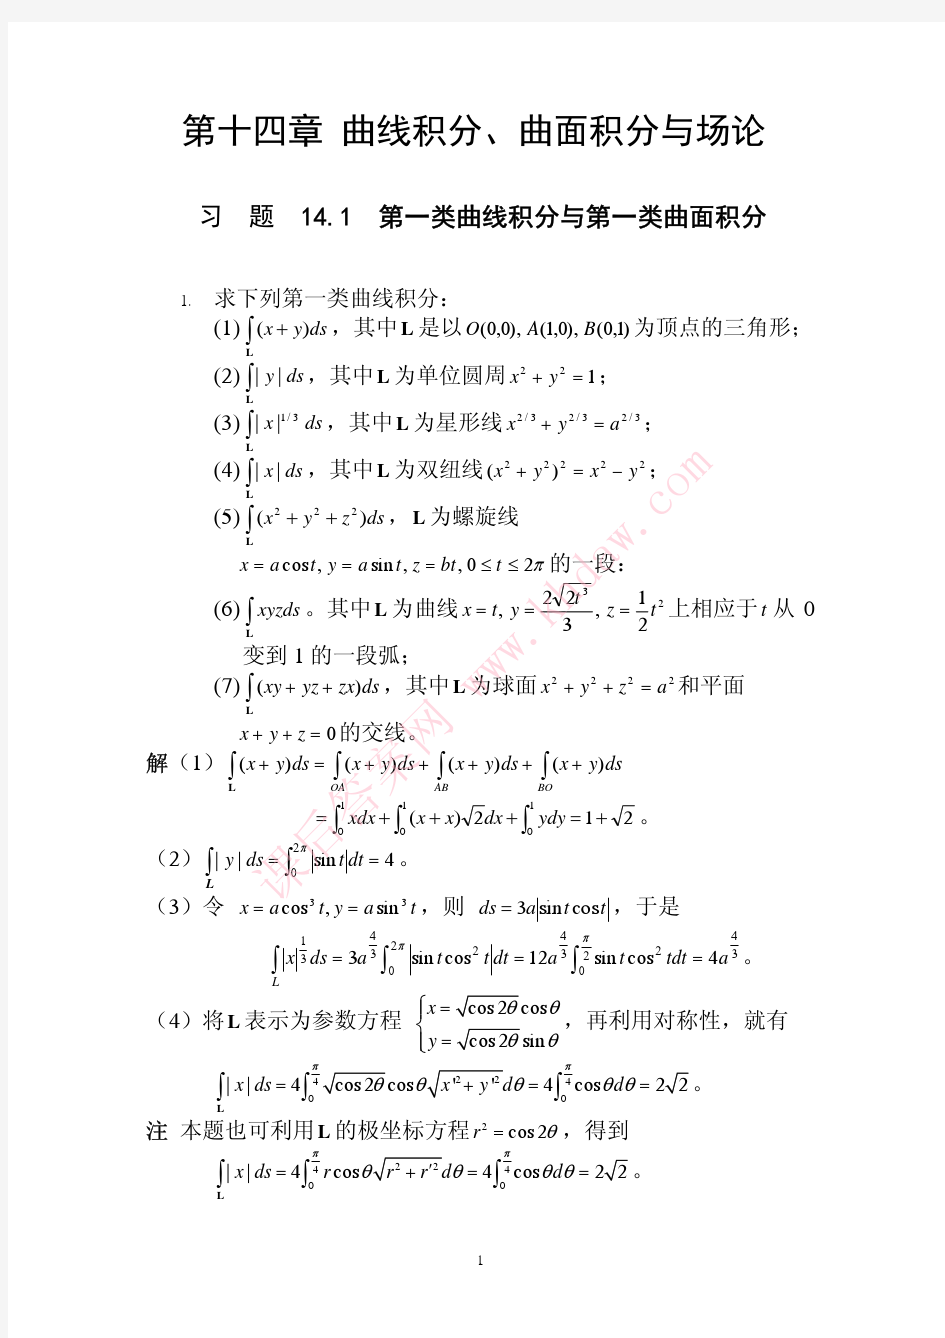 数学分析课后习题答案--高教第二版(陈纪修)--14章